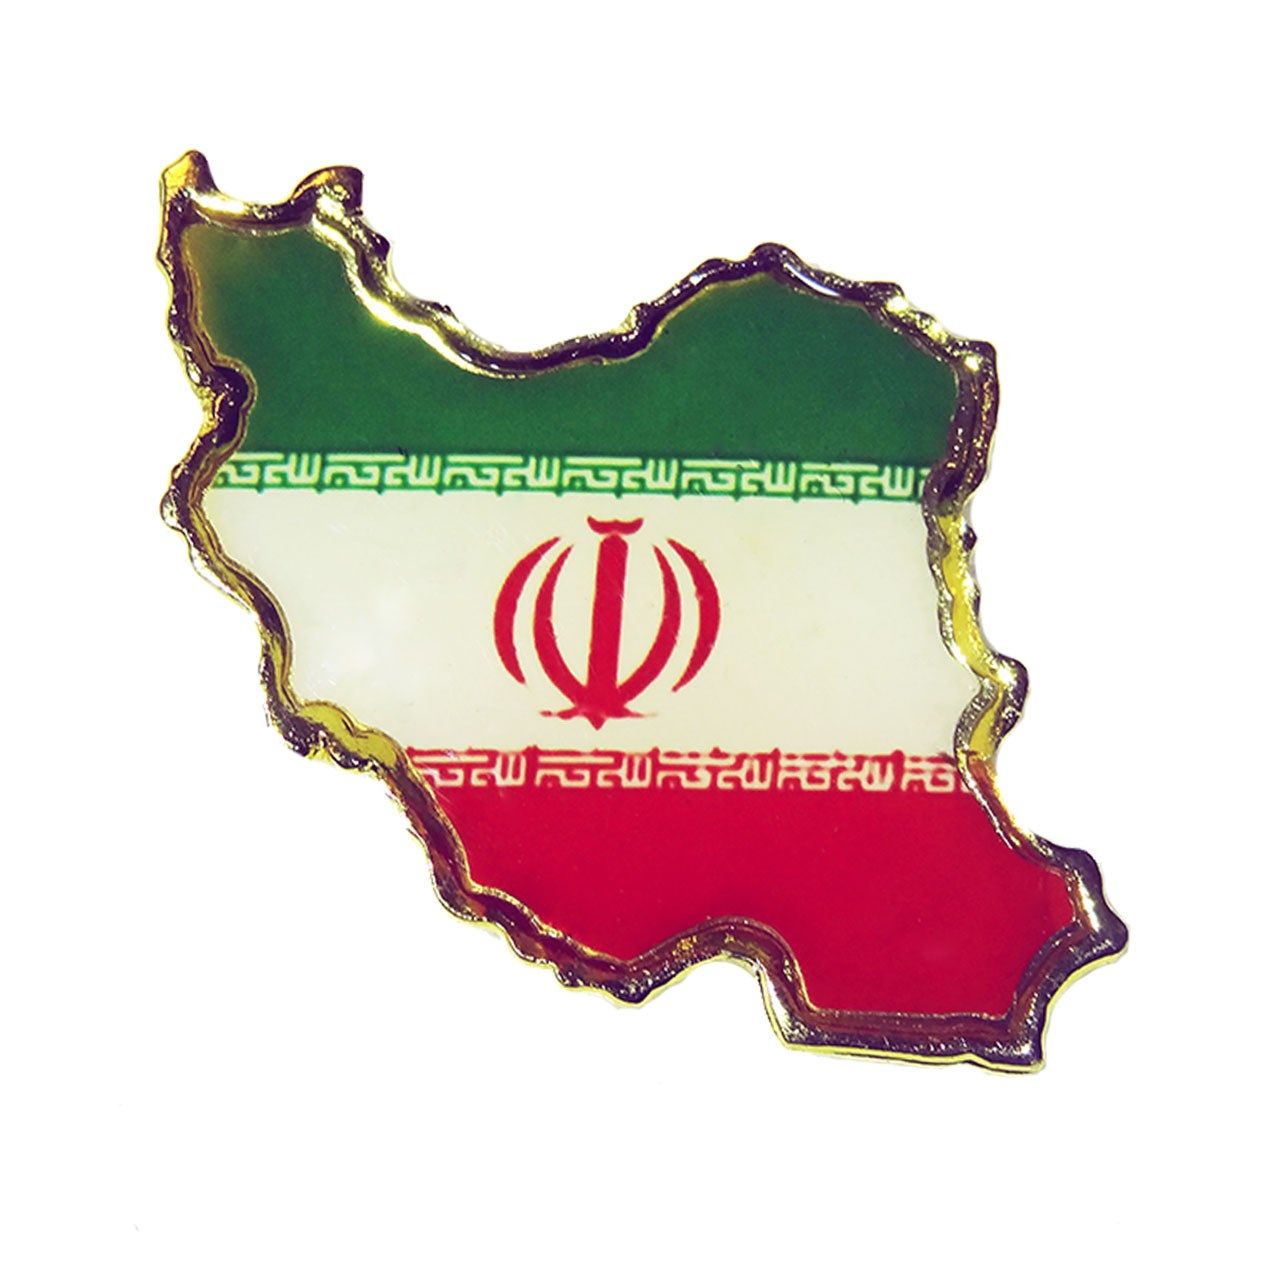 بج سینه طرح نقشه ایران -  - 1